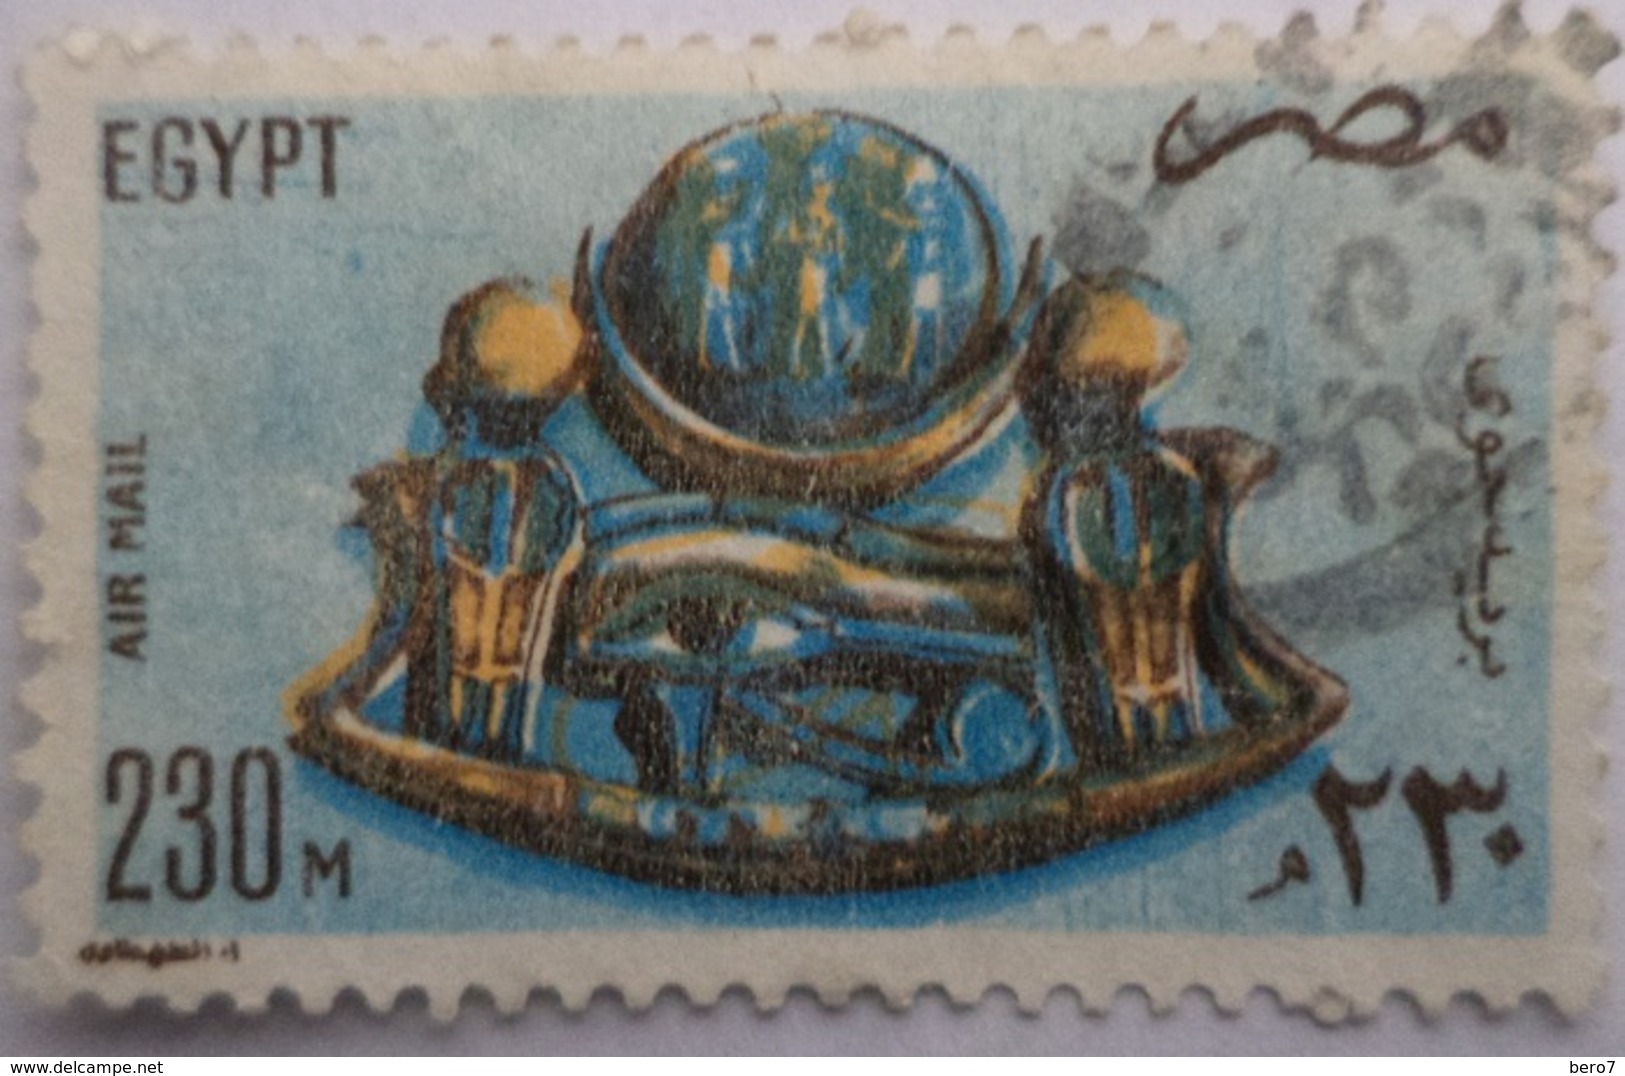 EGYPT - 1981- Old Egyptian Piece Of Jewelry- Air Mail -  (Egypte) (Egitto) (Ägypten) (Egipto) (Egypten) - Gebruikt